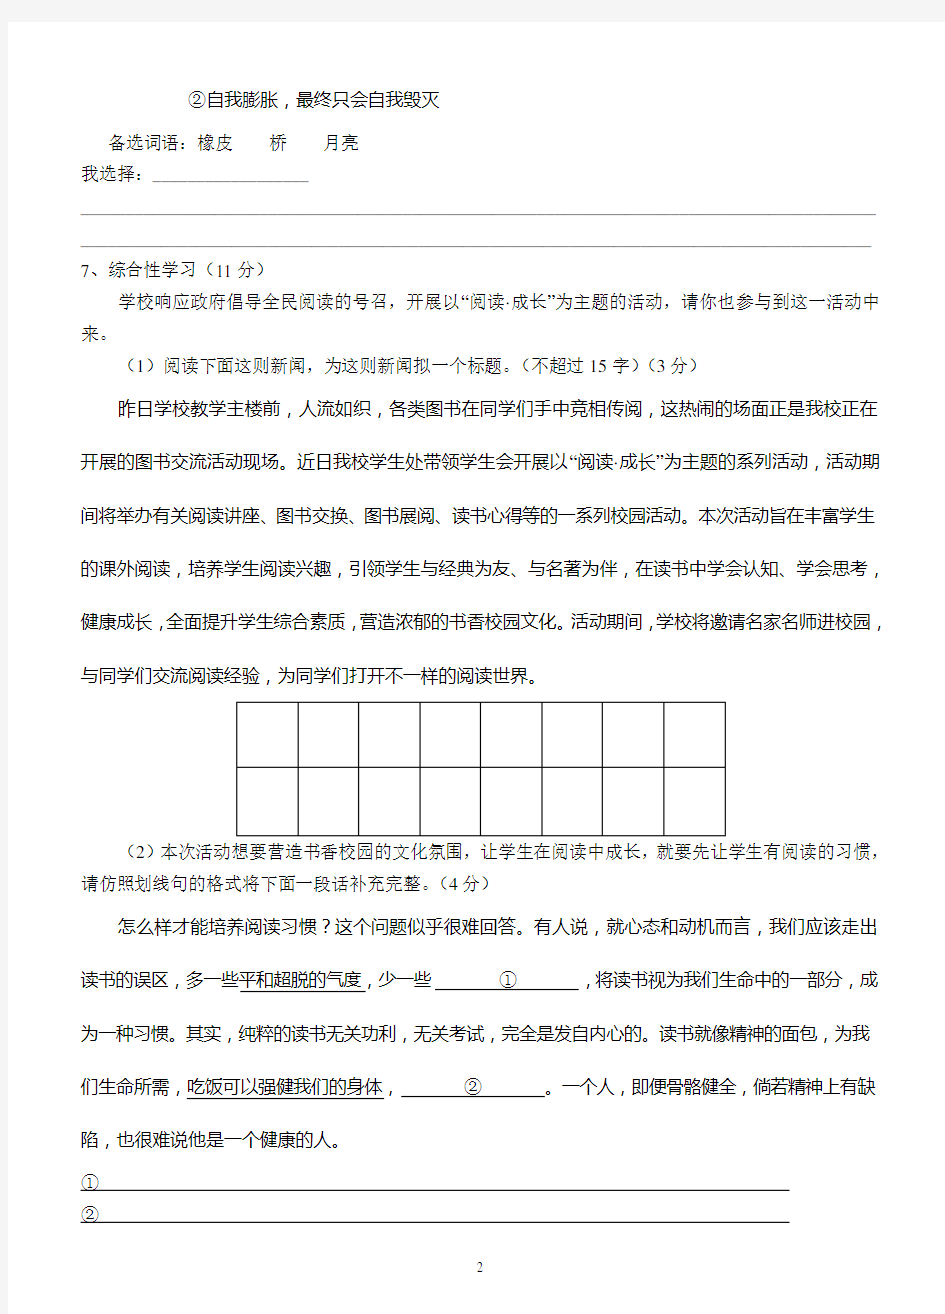 重庆一中初2017级15-16学年(上)半期试题——语文